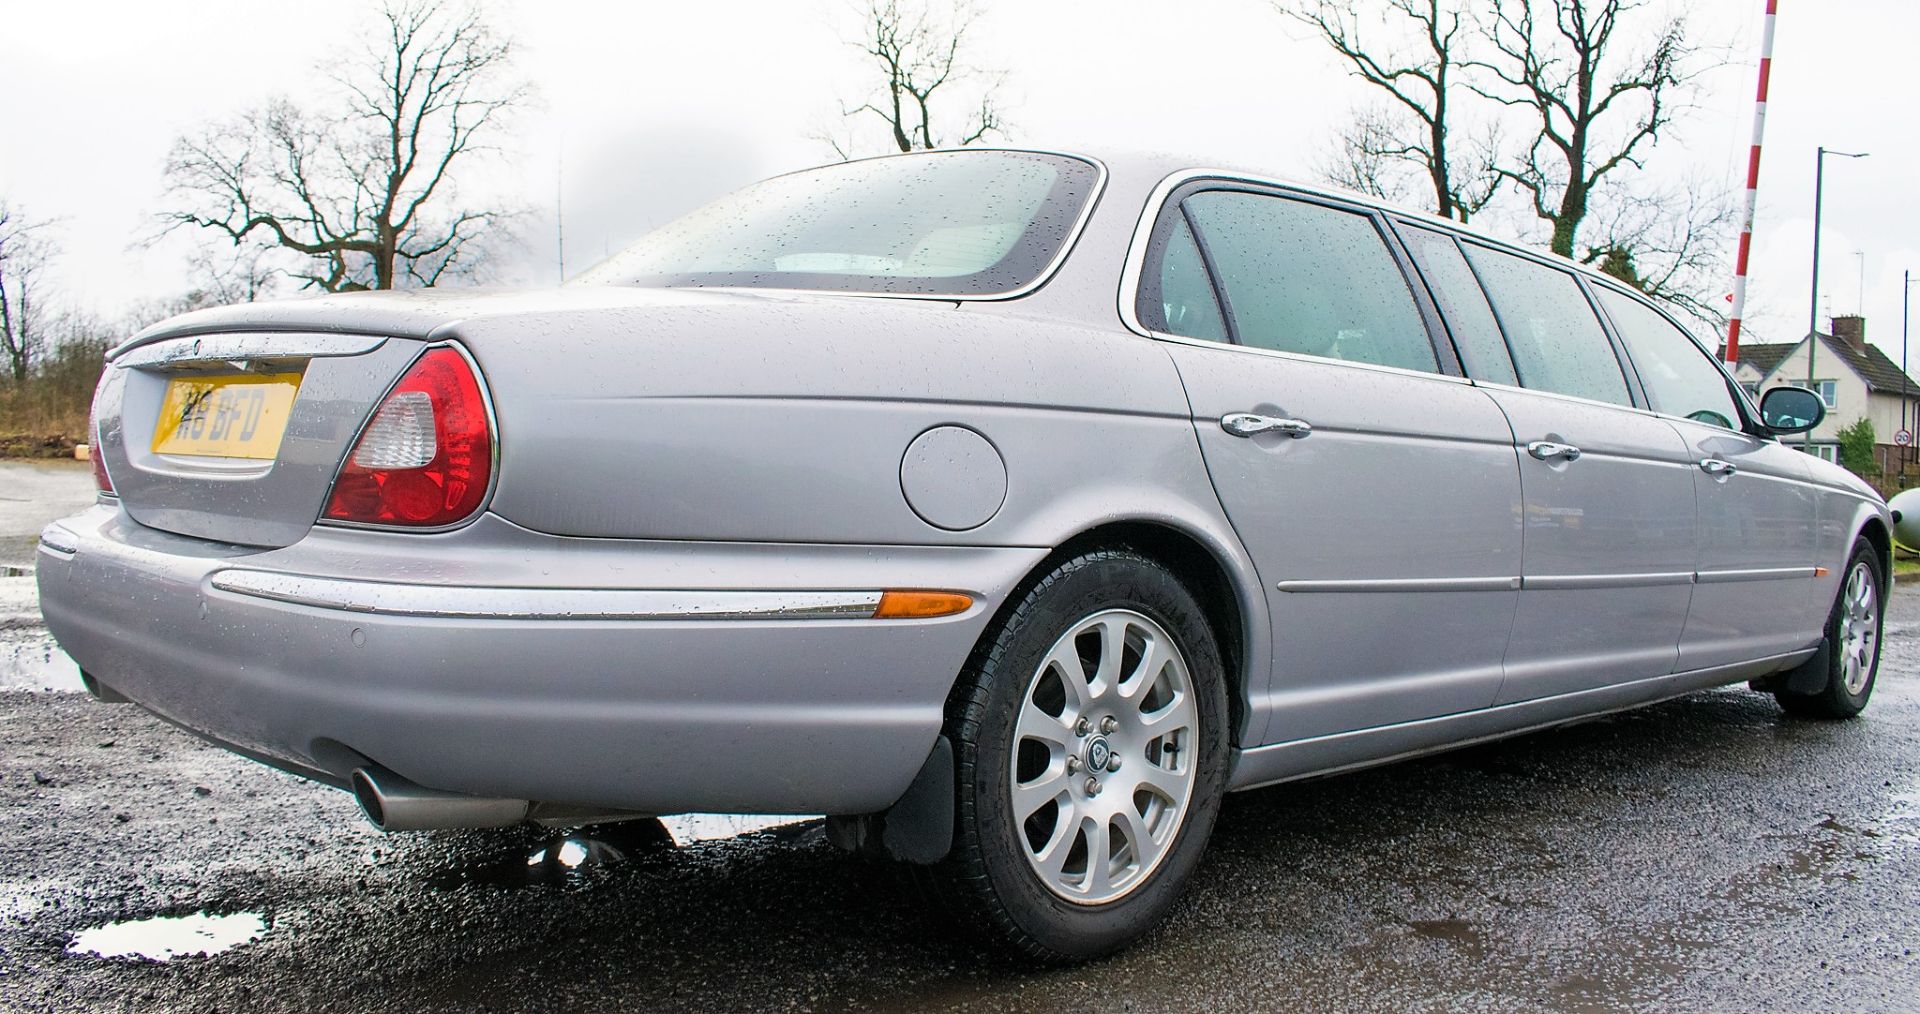 Jaguar XJ6 V6 automatic stretch Limousine Registration Number: BW54 YNK (Registration Number - Image 3 of 21